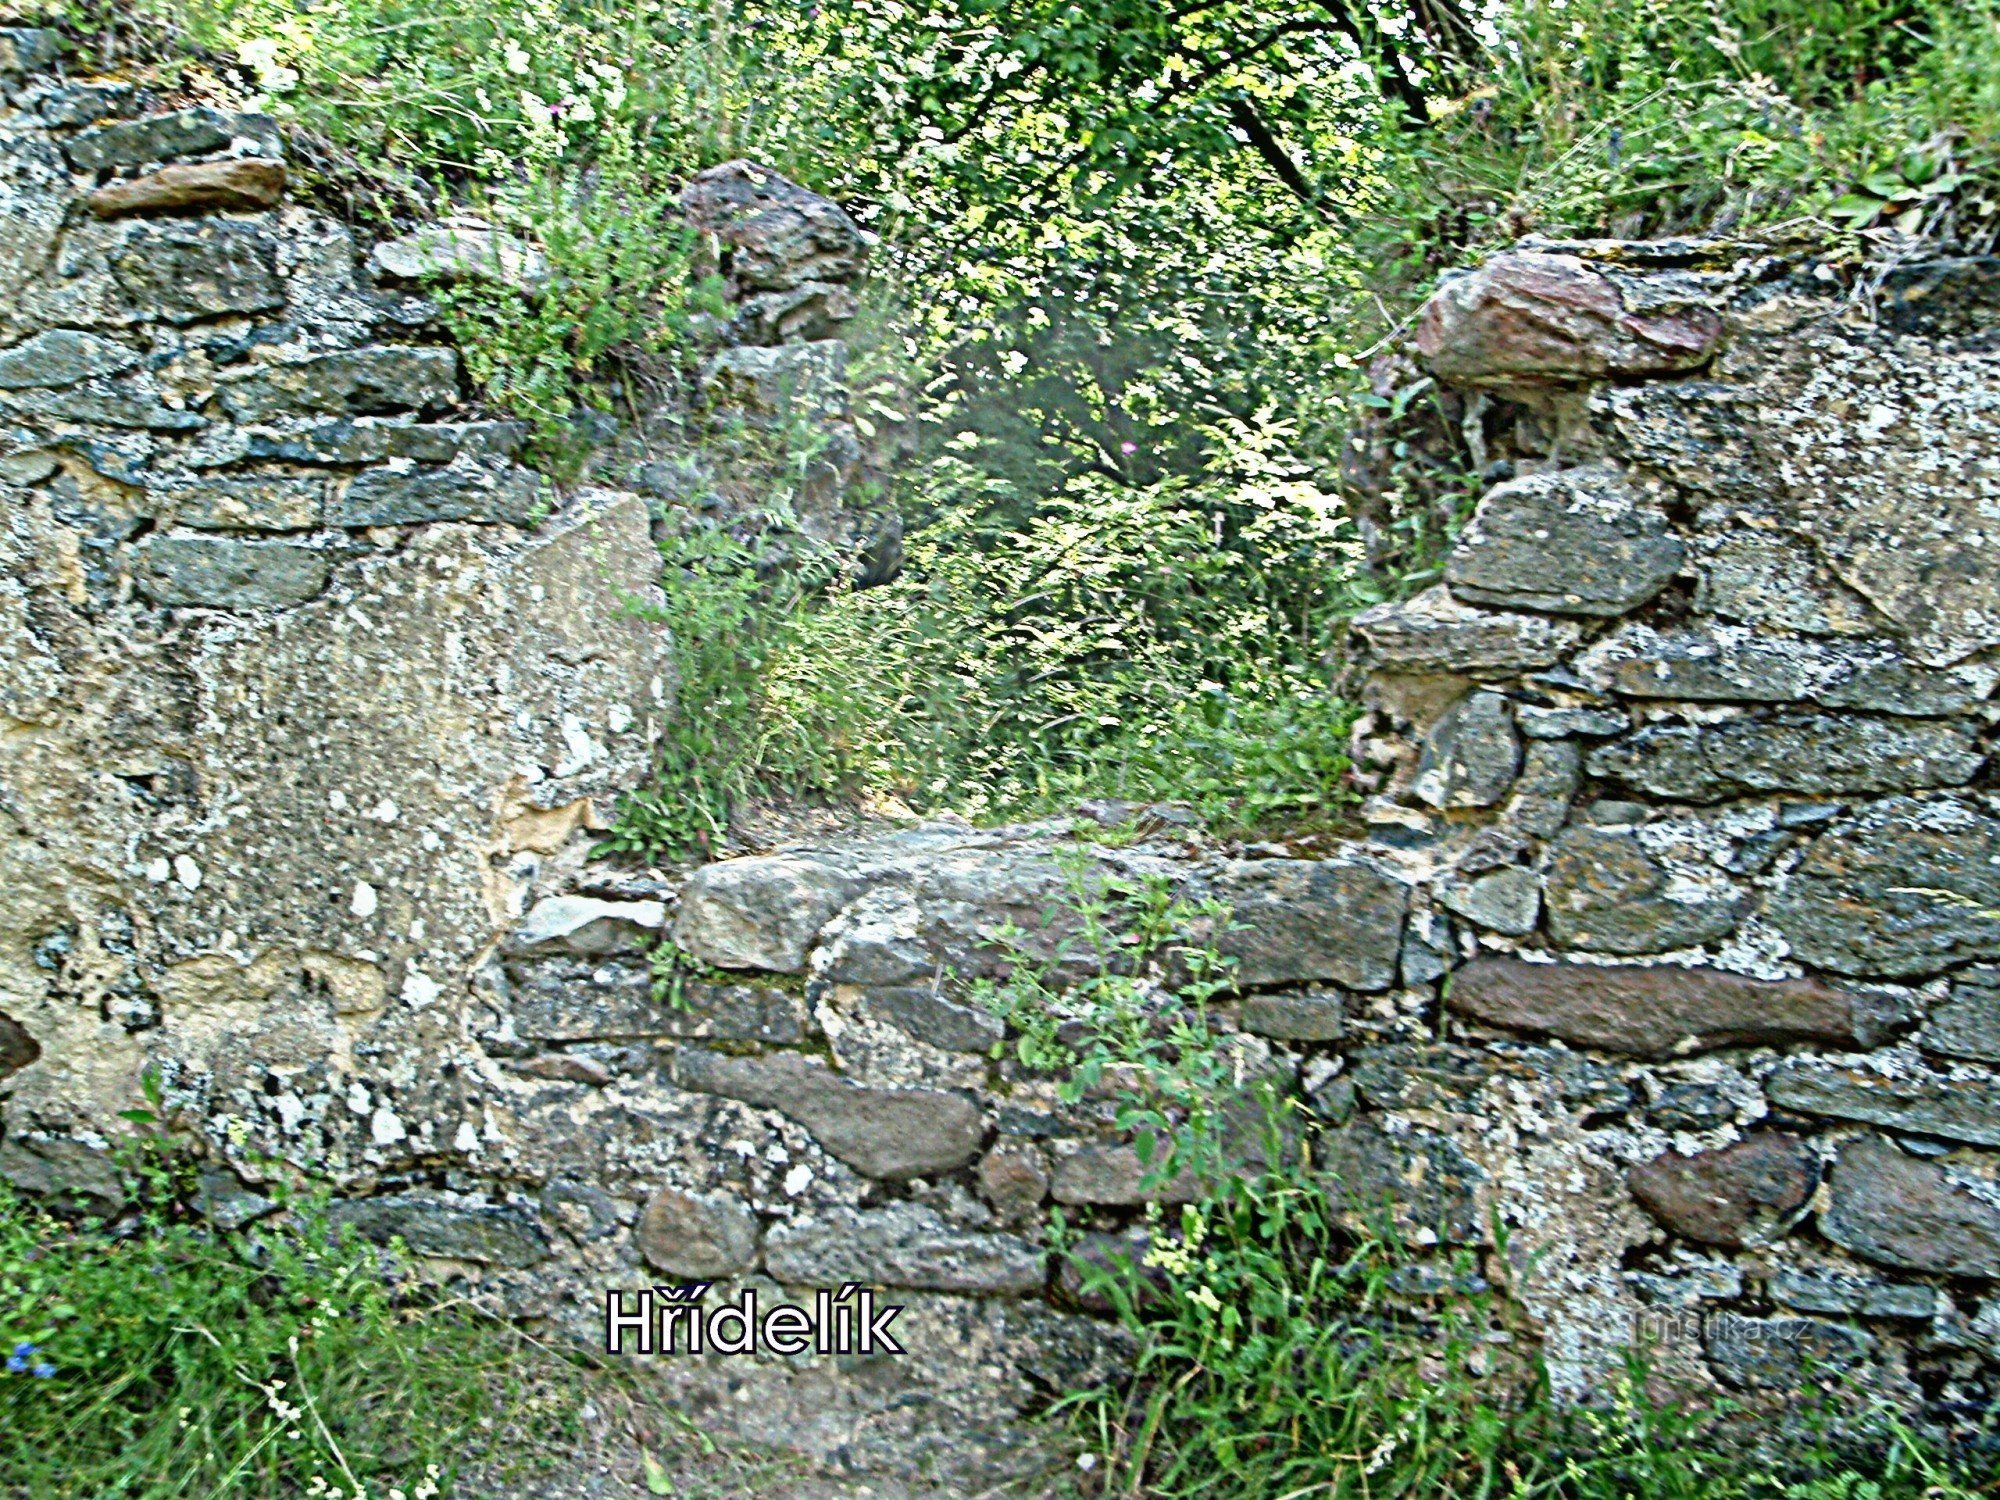 Blíževedly - ruševine gradu Hřídelík